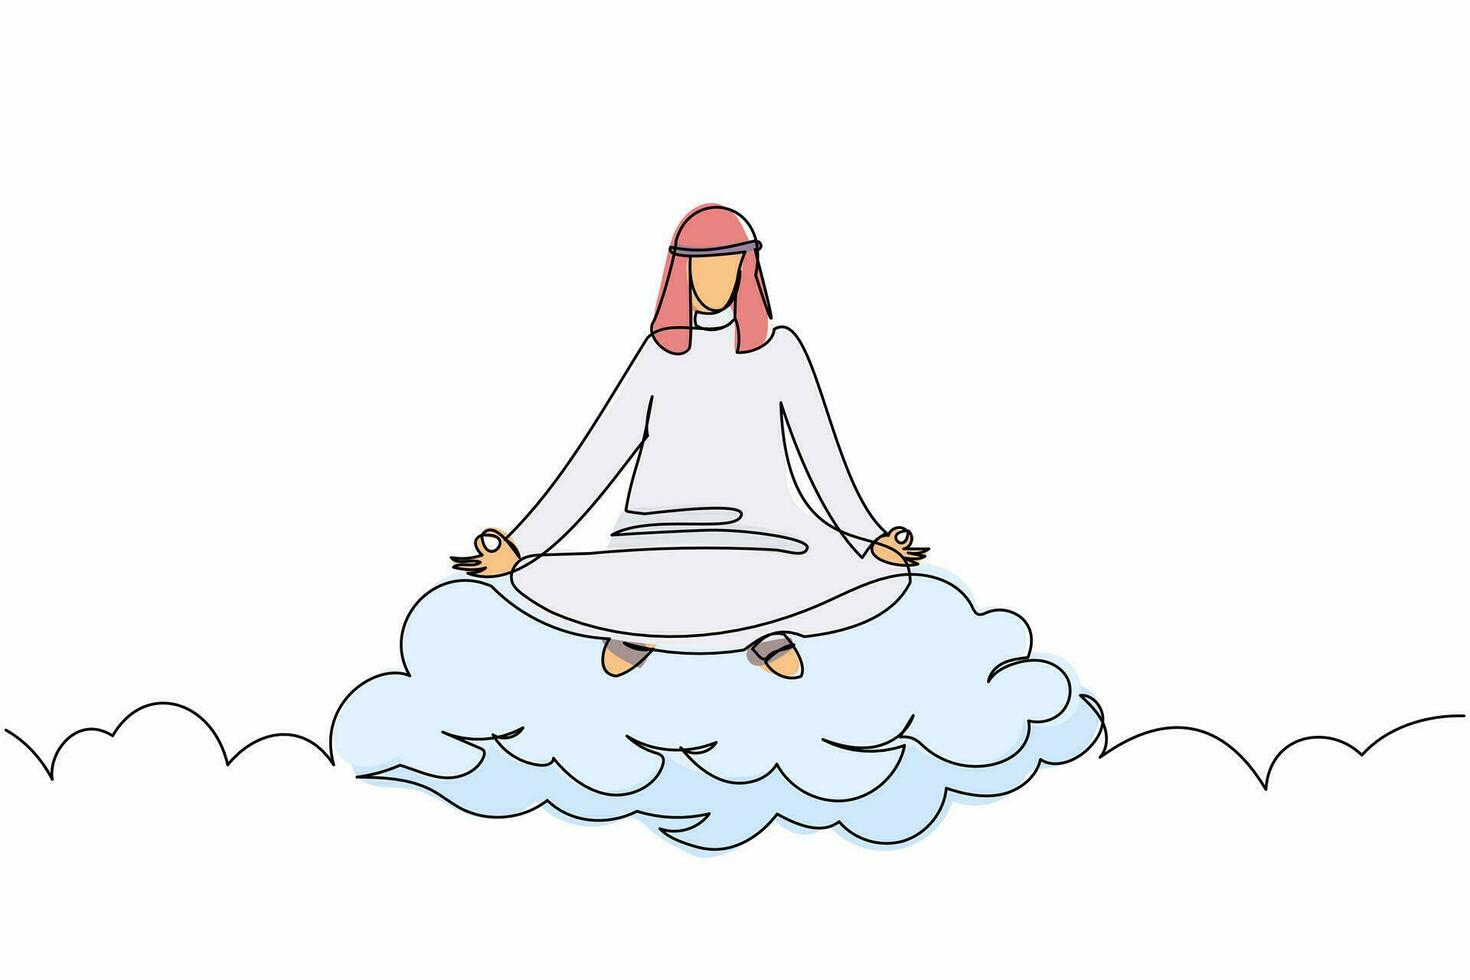 disegno continuo di una linea uomo d'affari arabo medita e riposa nella posizione del loto sulle nuvole. uomo arabo rilassante con posa yoga o meditazione. illustrazione grafica vettoriale di disegno a linea singola